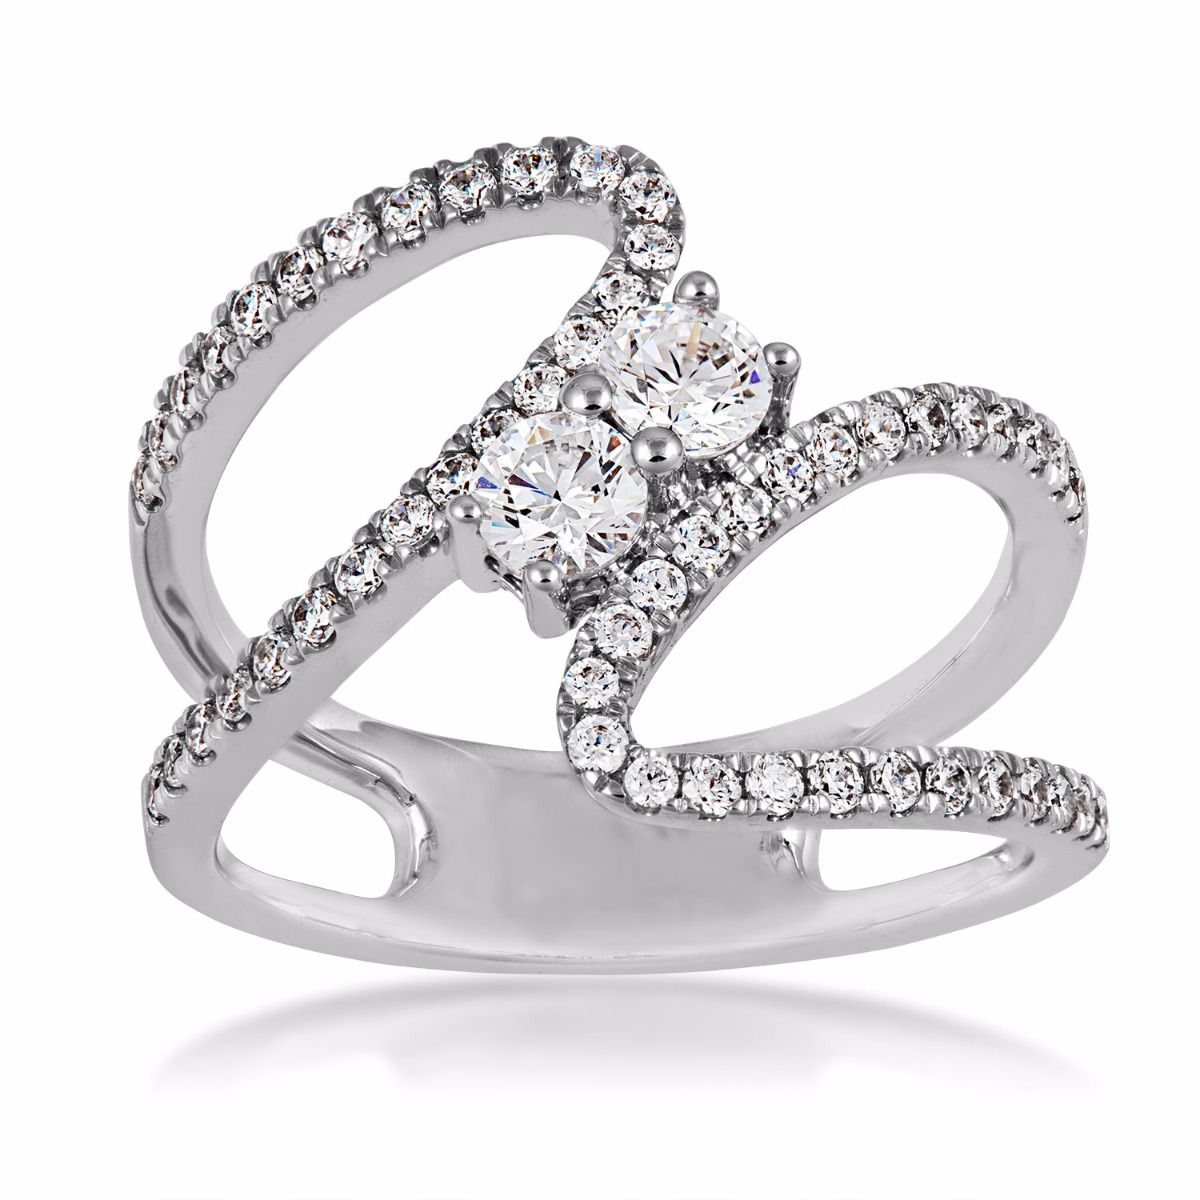 designer rings 7/8cttw 2beloved diamond ring in 14k white gold - sr1324r lwncchu